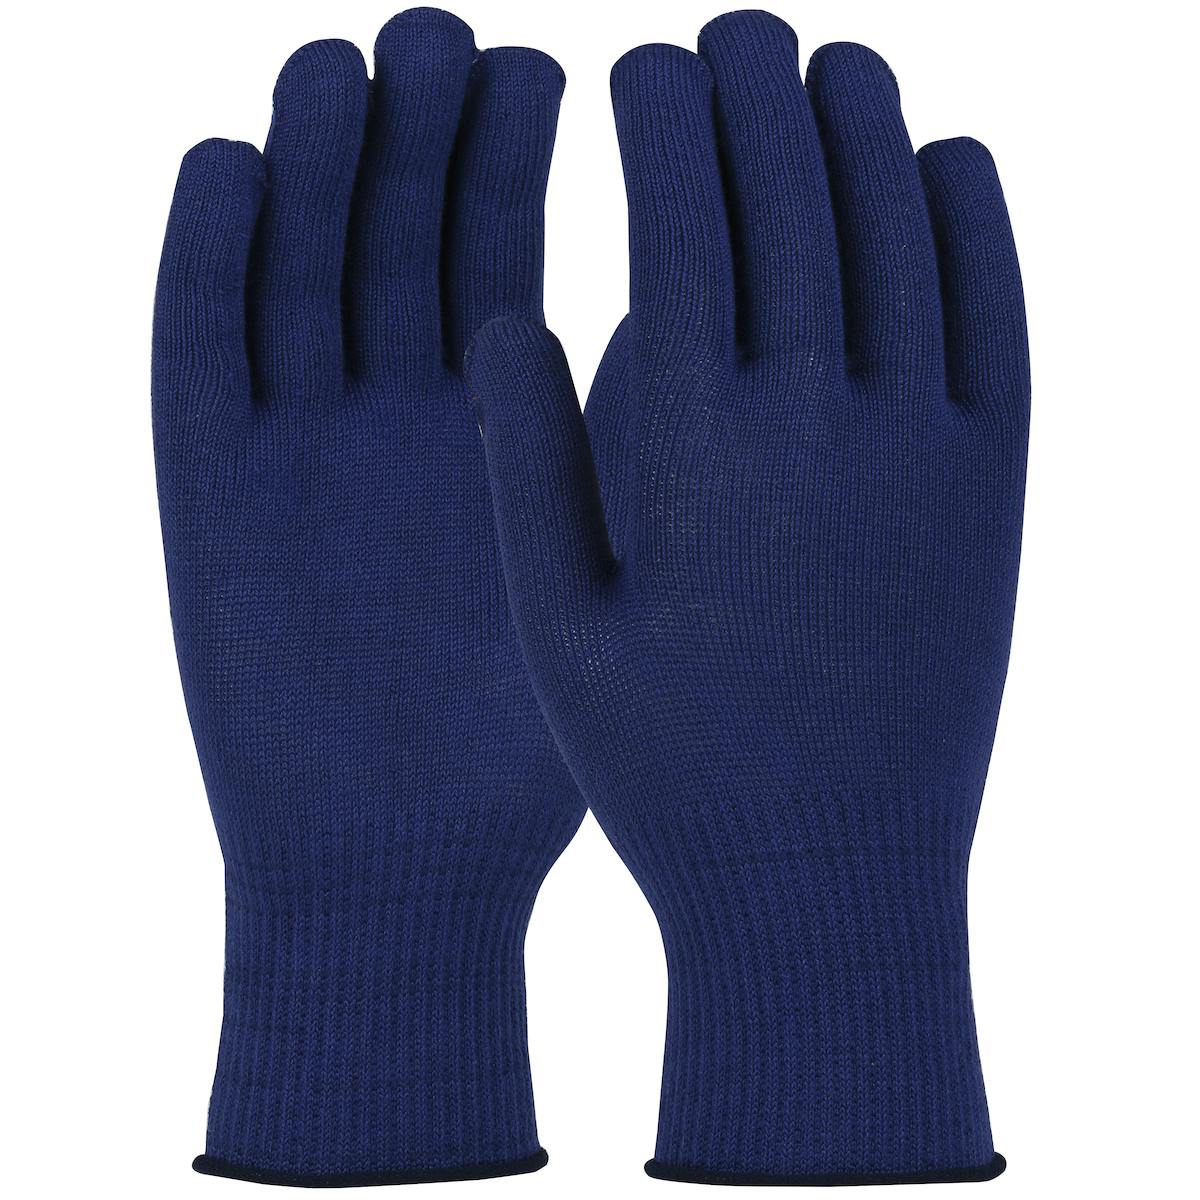 Seamless Knit Filament Polyester Glove - Light Weight, Navy (M13TM-BLUE) - M